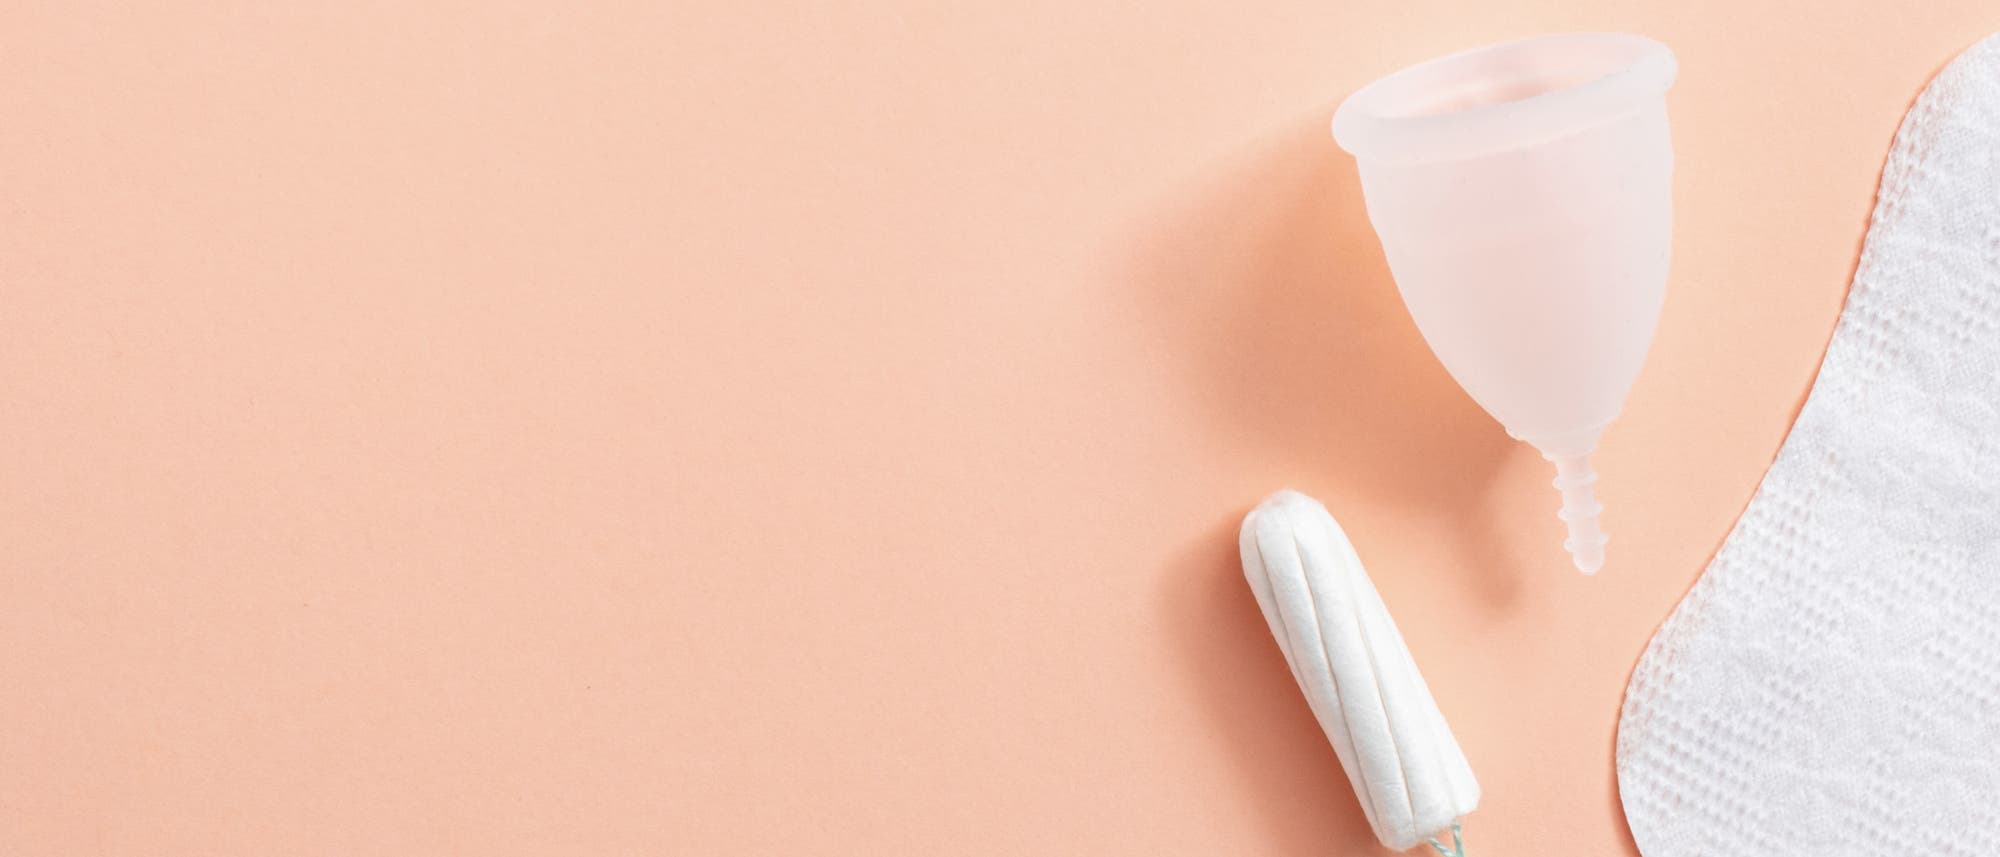 Tampon, Binde, Menstruationstasse – was hat welche Vorteile?